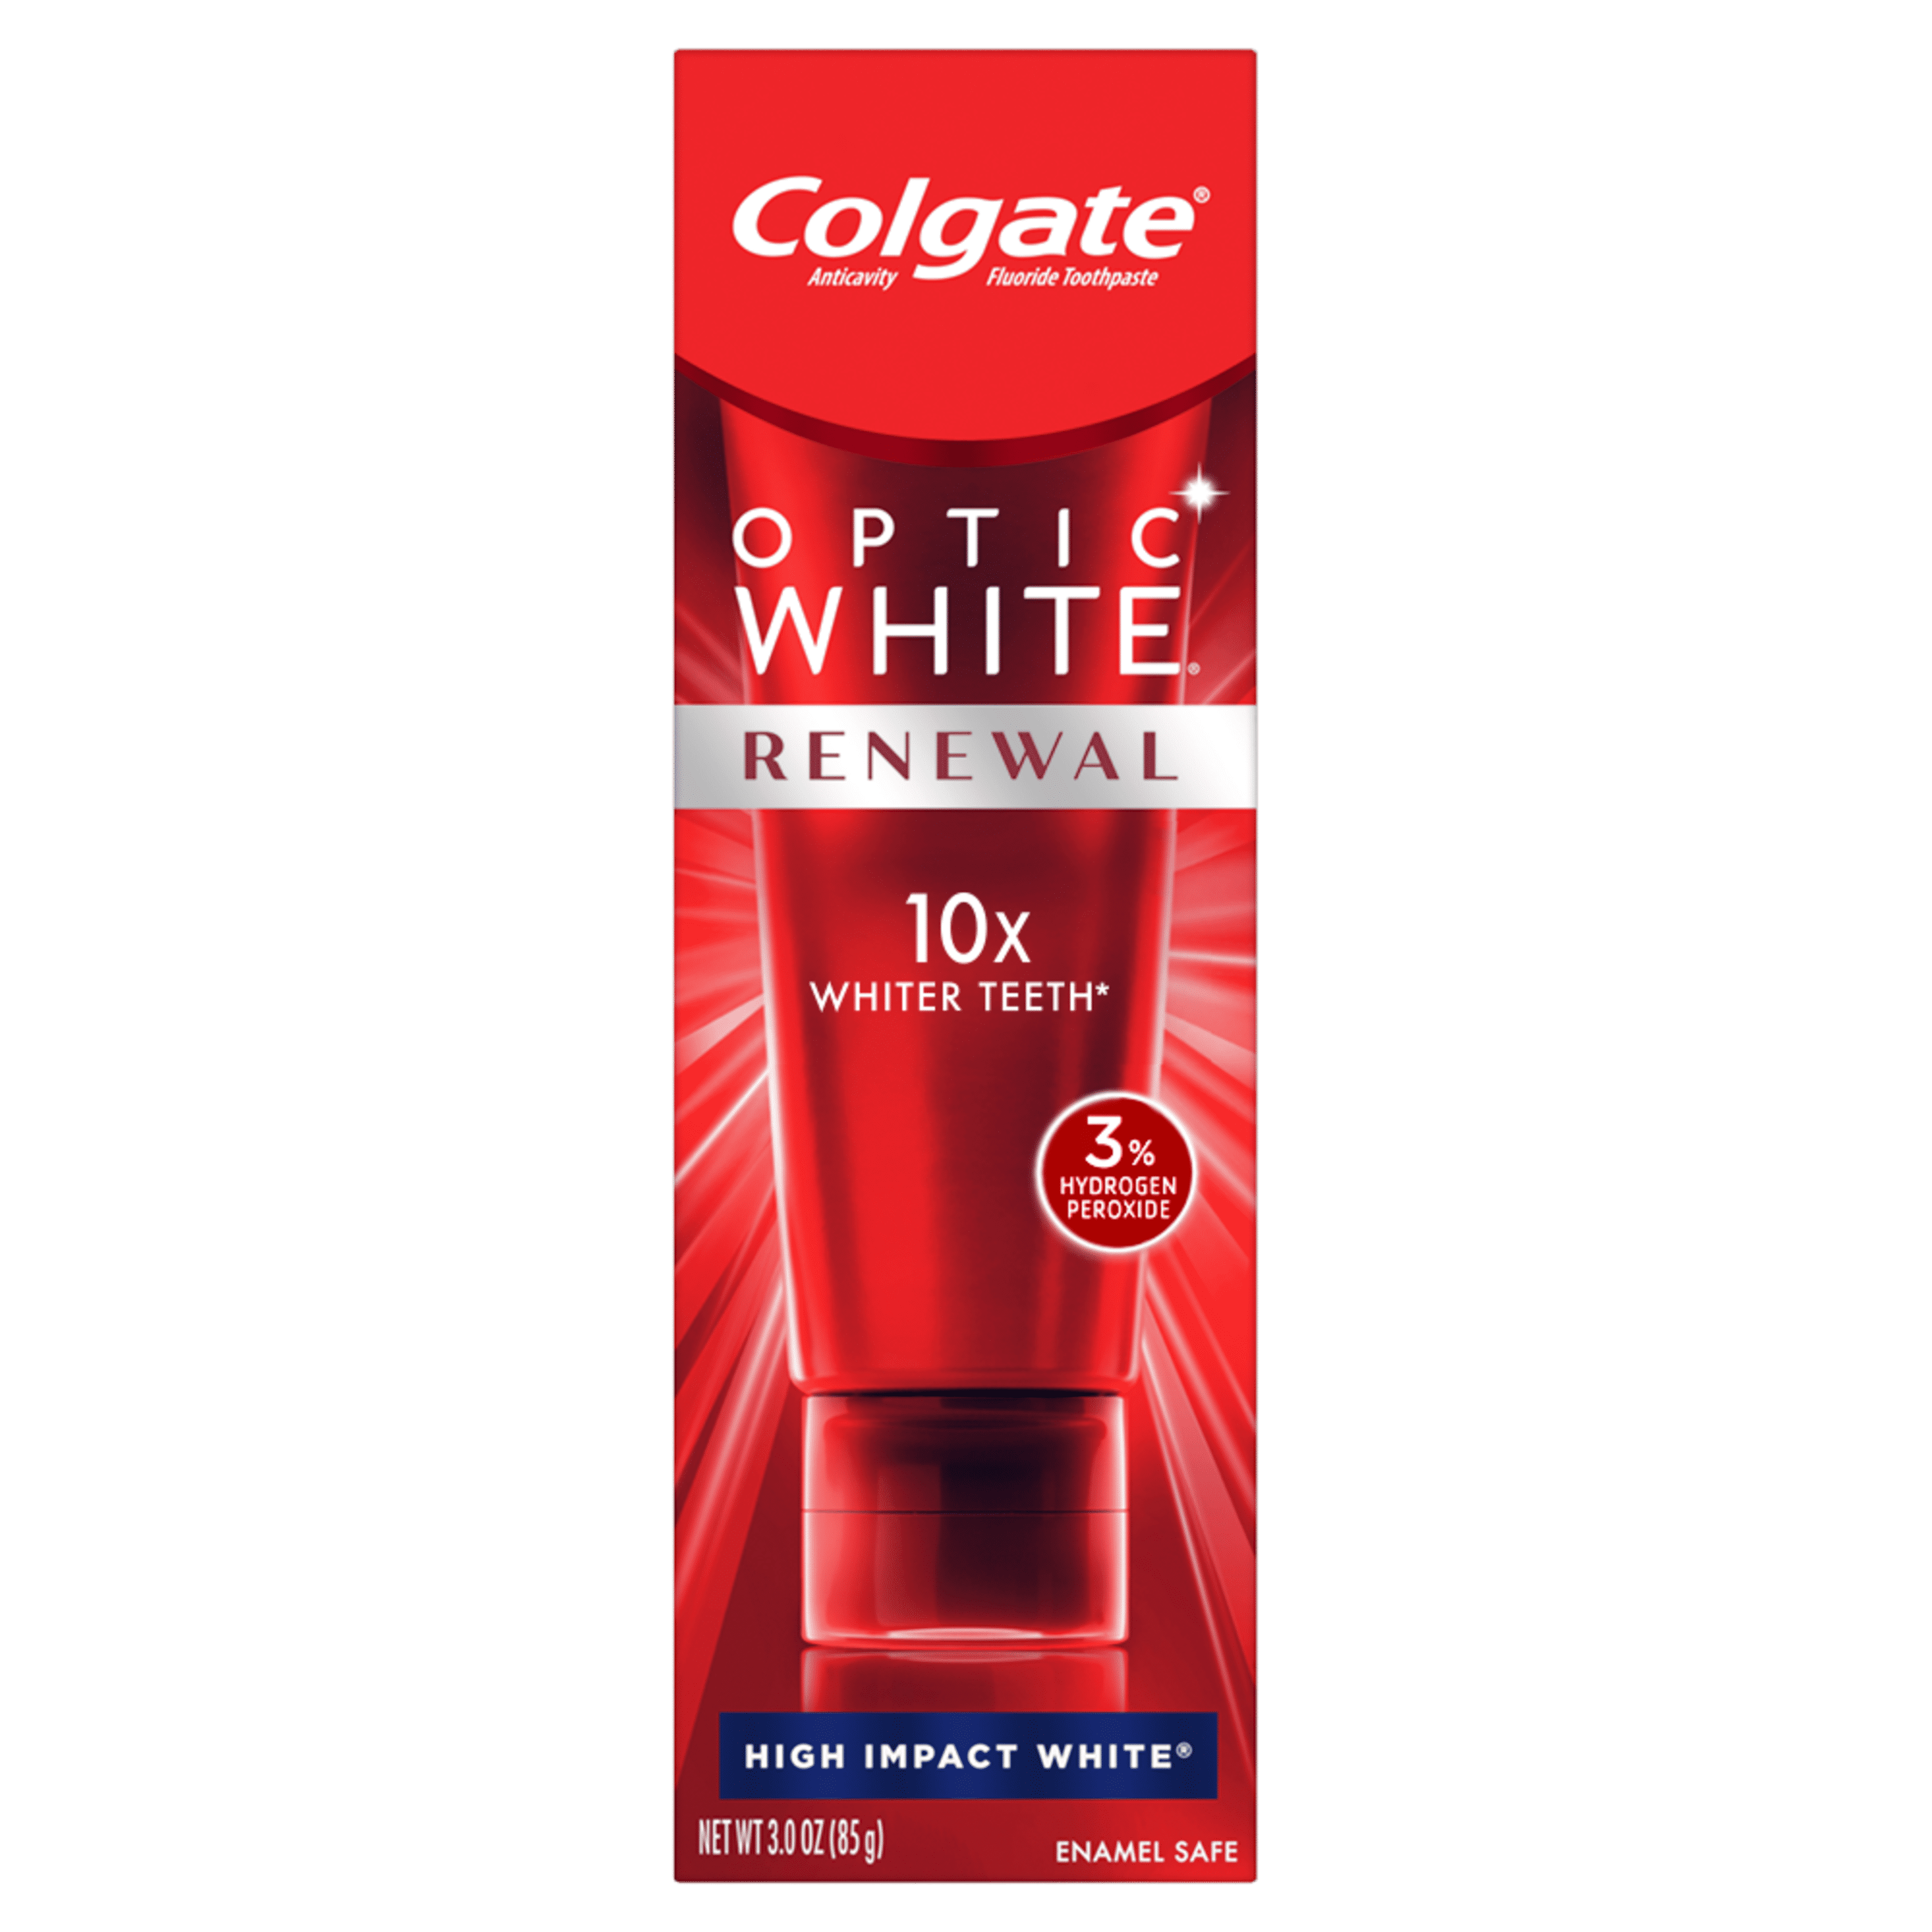 Colgate Optic White Renewal Toothpaste, Teeth Whitening Toothpaste, High Impact White, 3 oz Tube